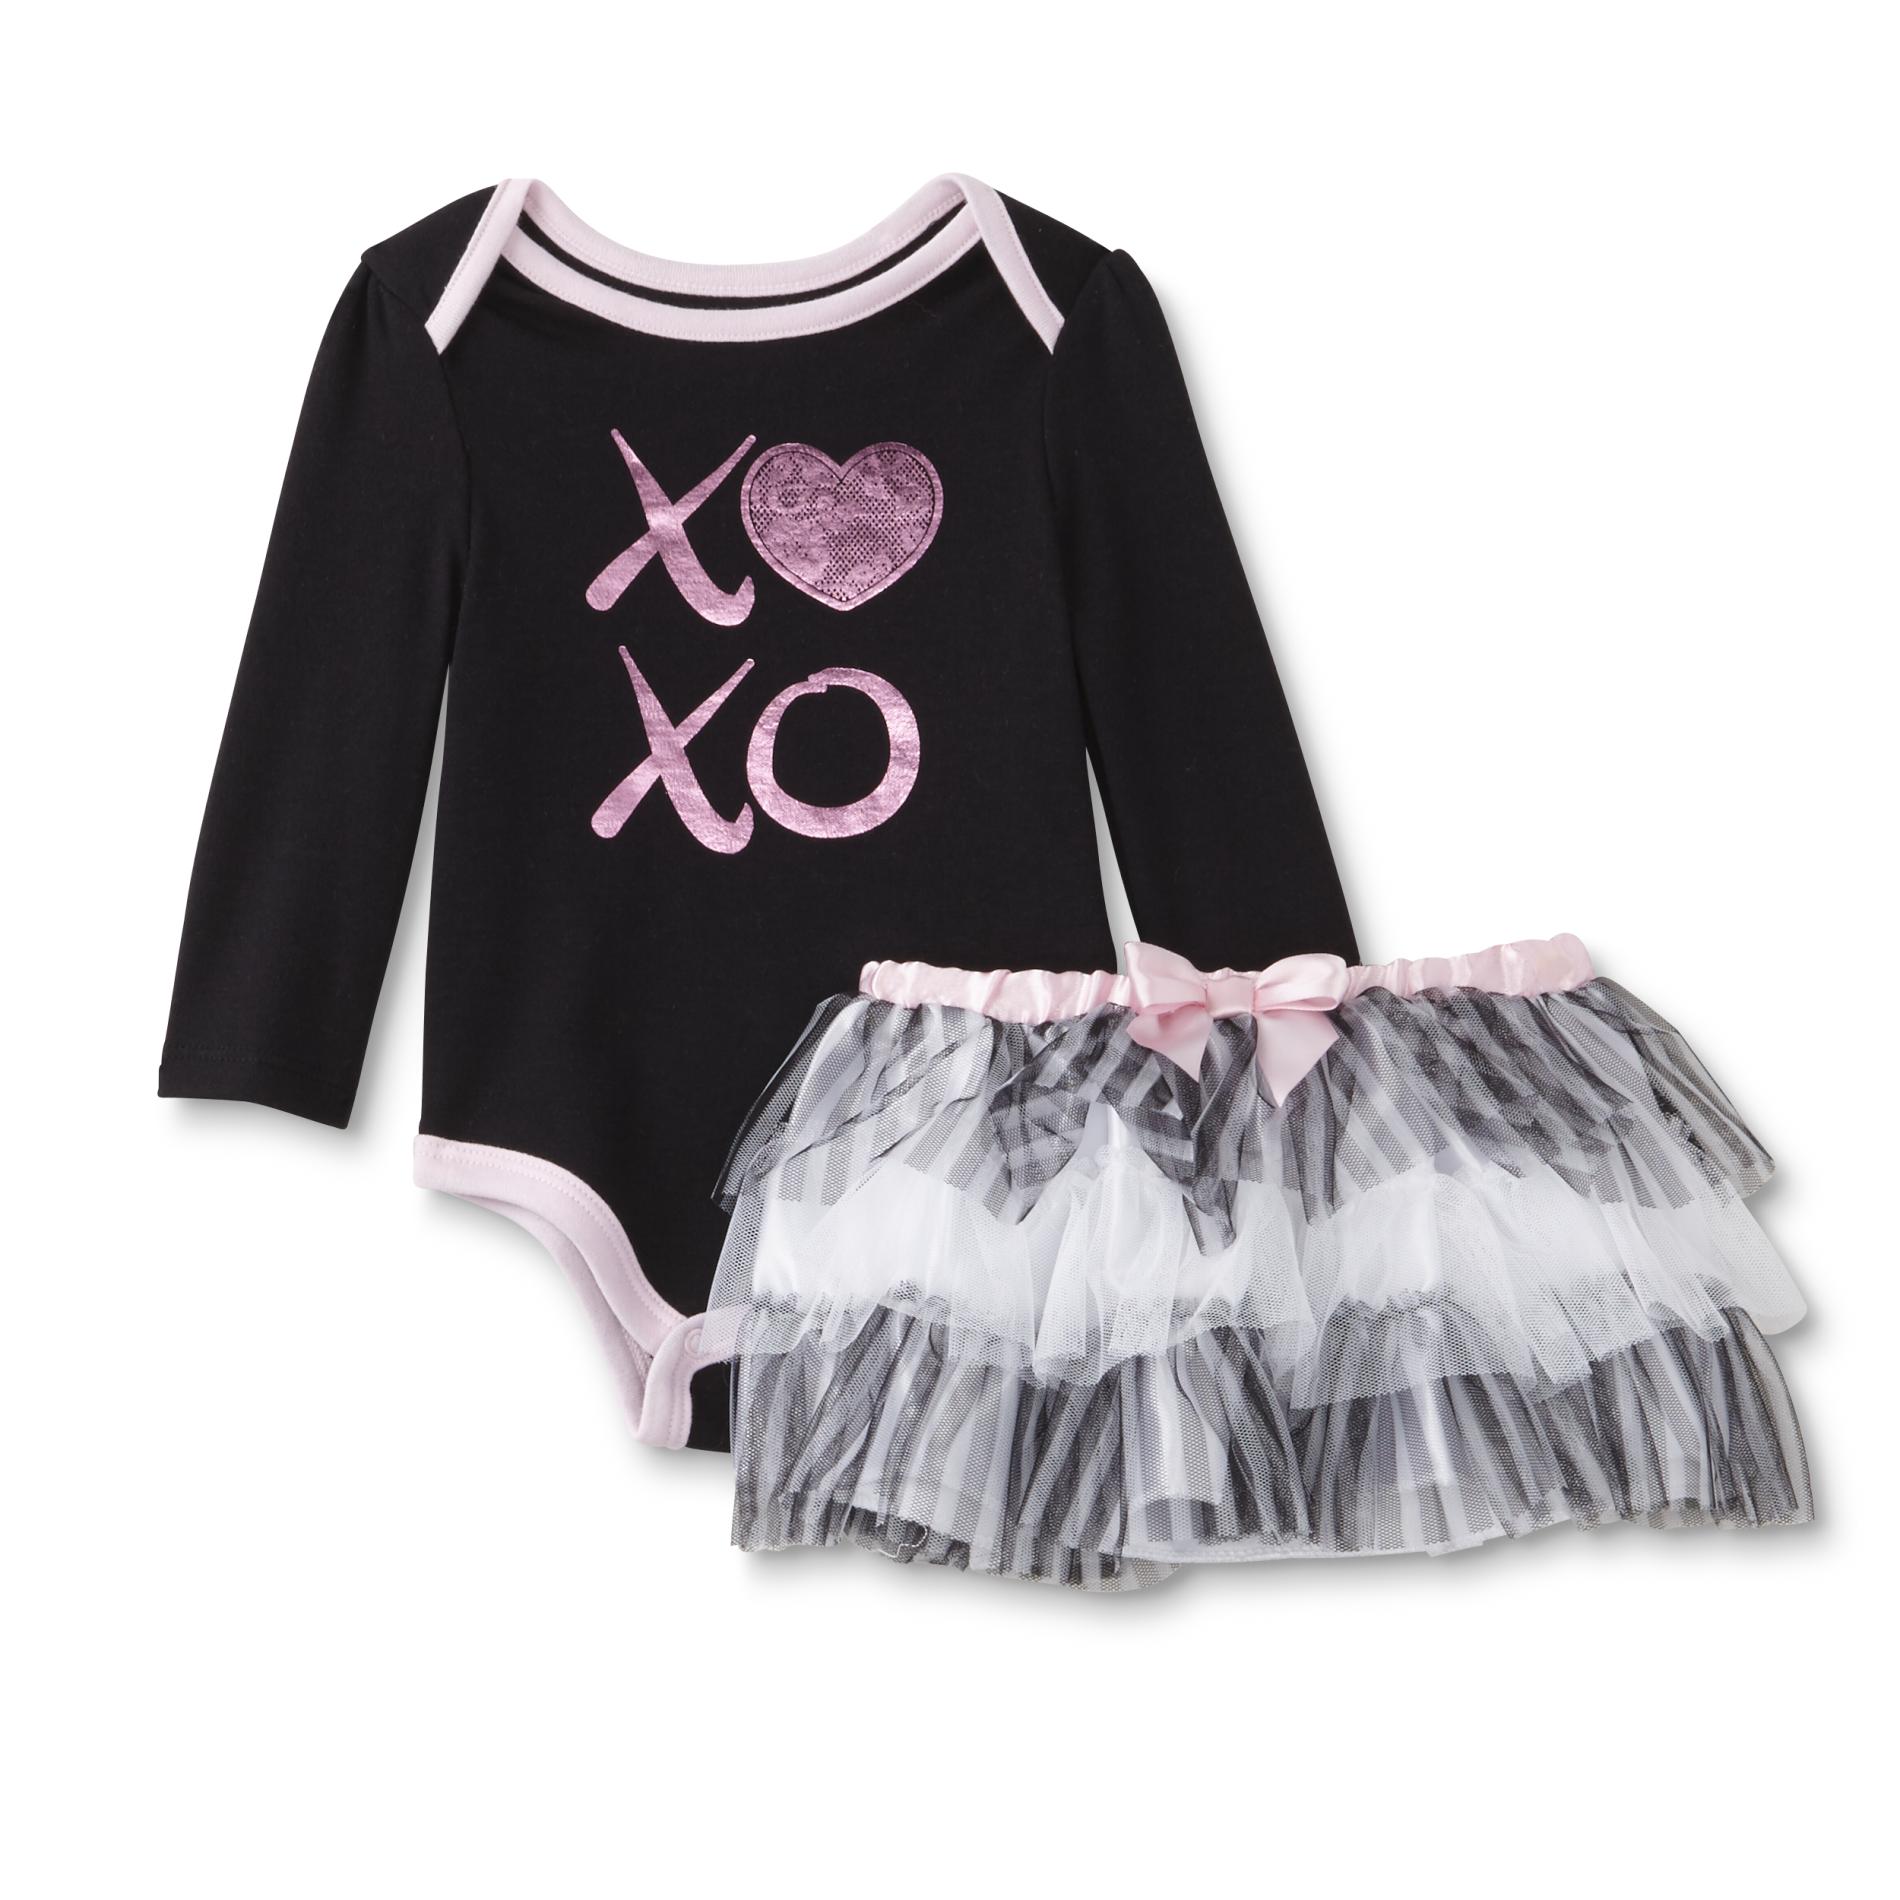 Freshly Squeezed Newborn & Infant Girl's Bodysuit & Skirt - XOXO